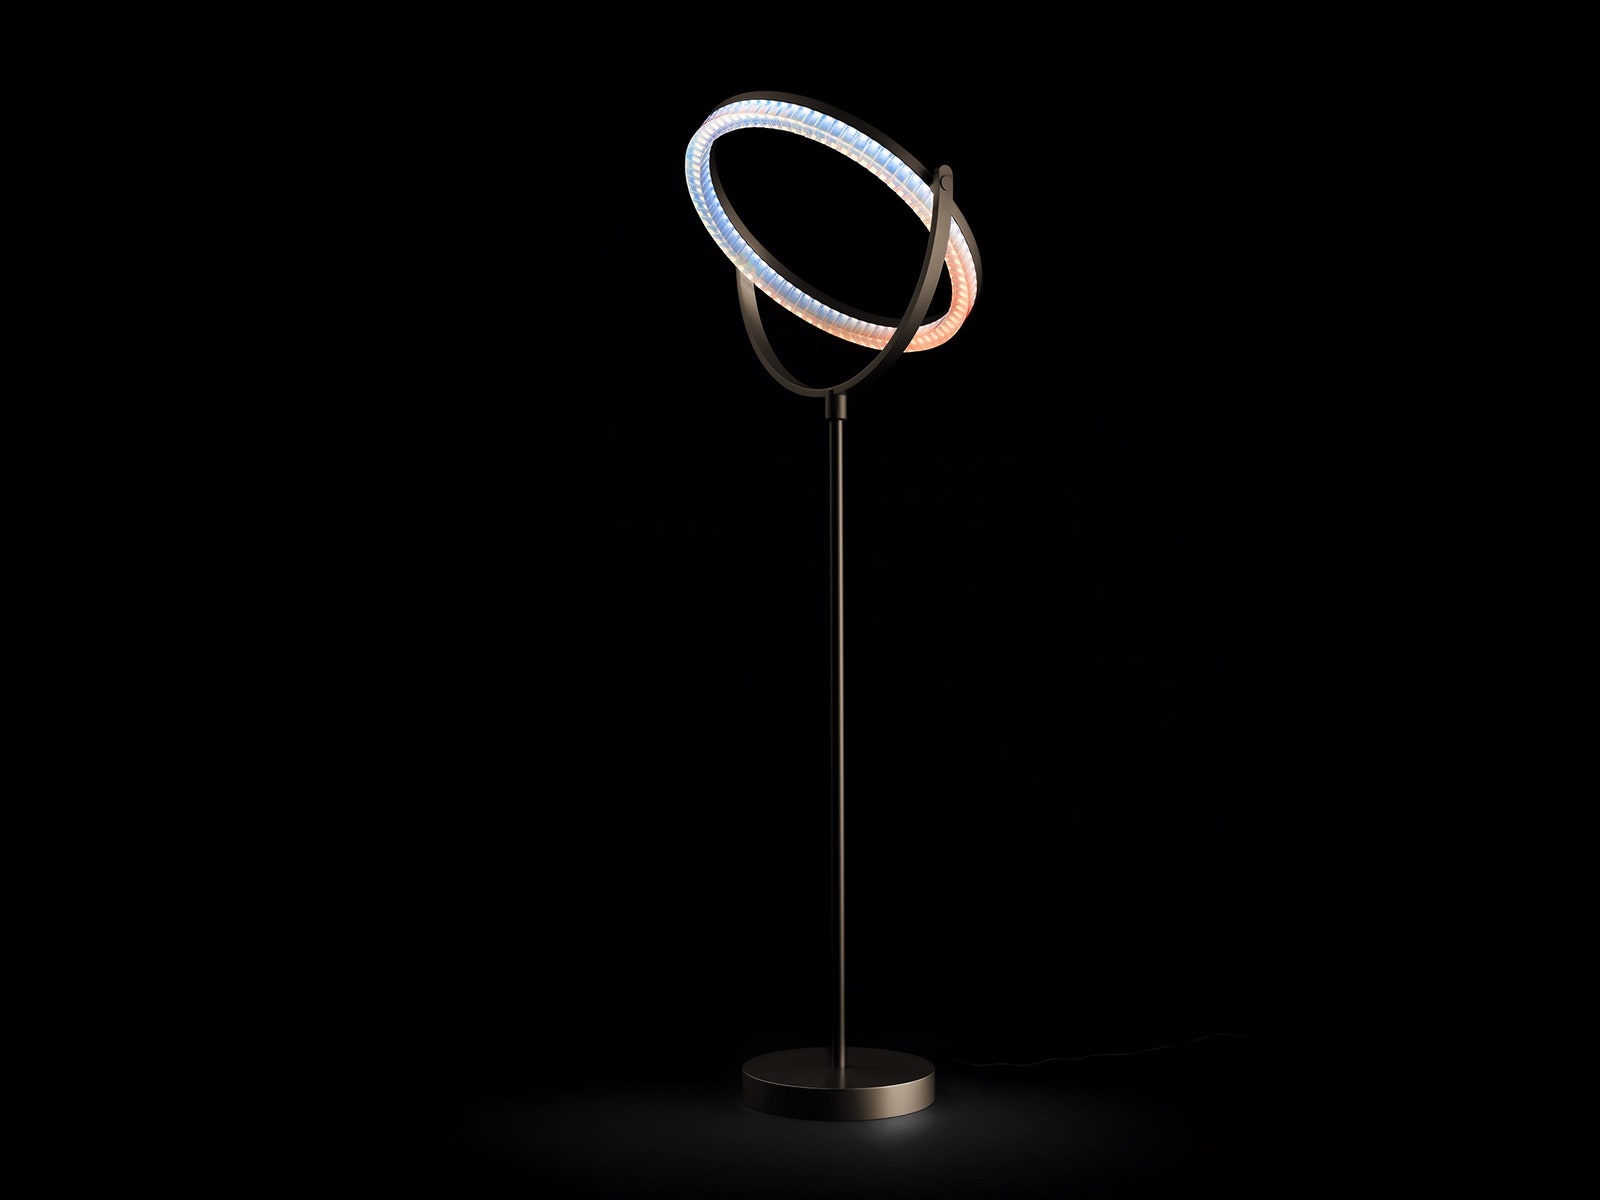 Новые коллекции светильников от Swarovski на Миланской неделе дизайна